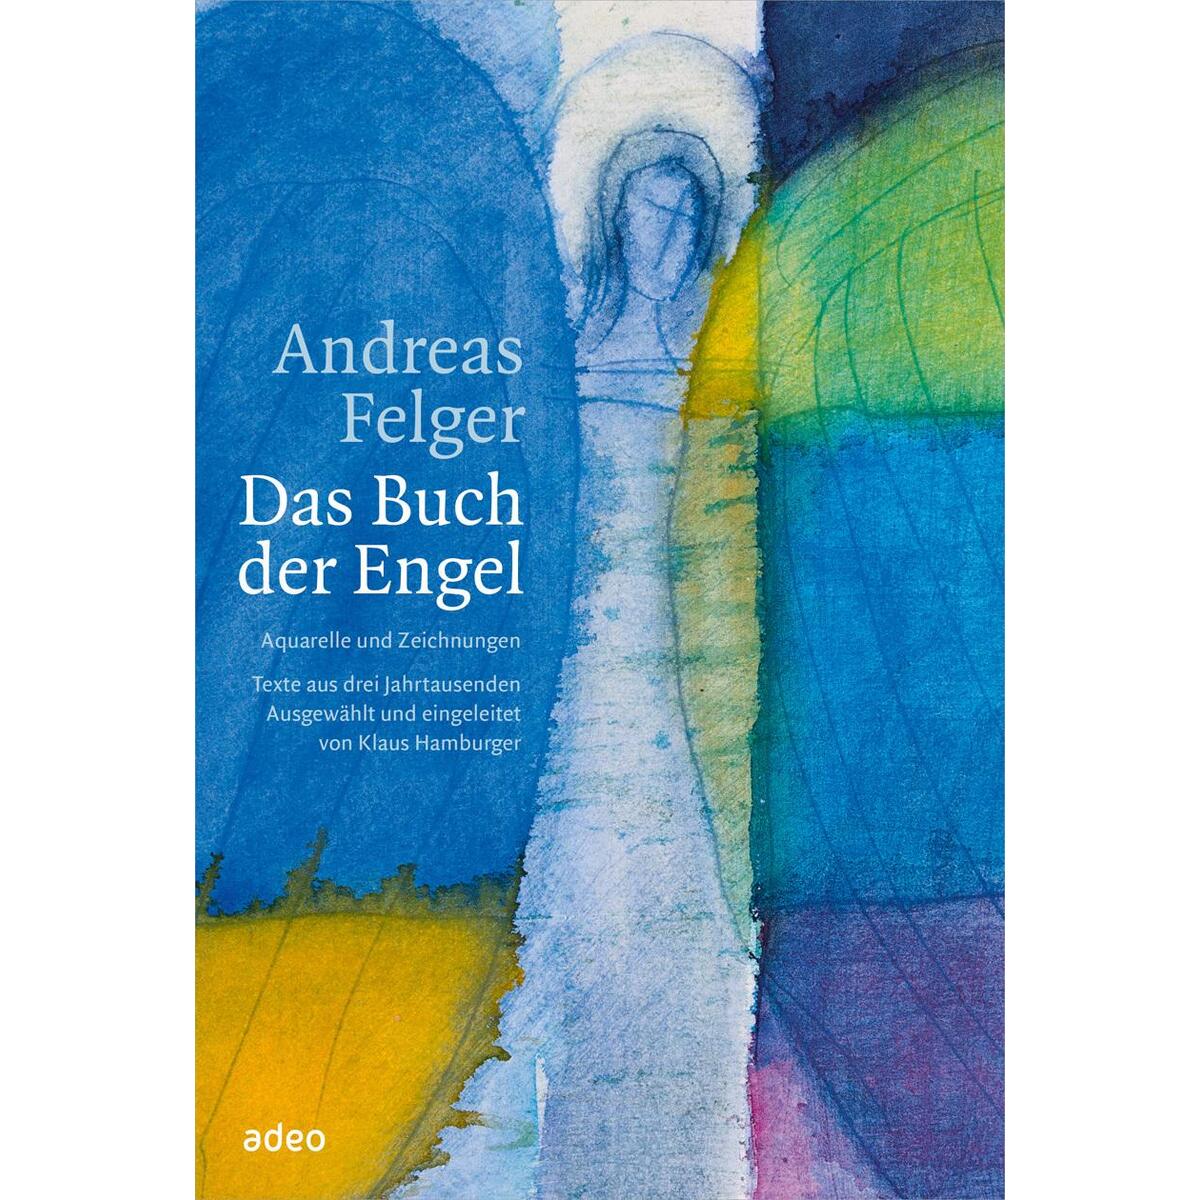 Das Buch der Engel von adeo Verlag